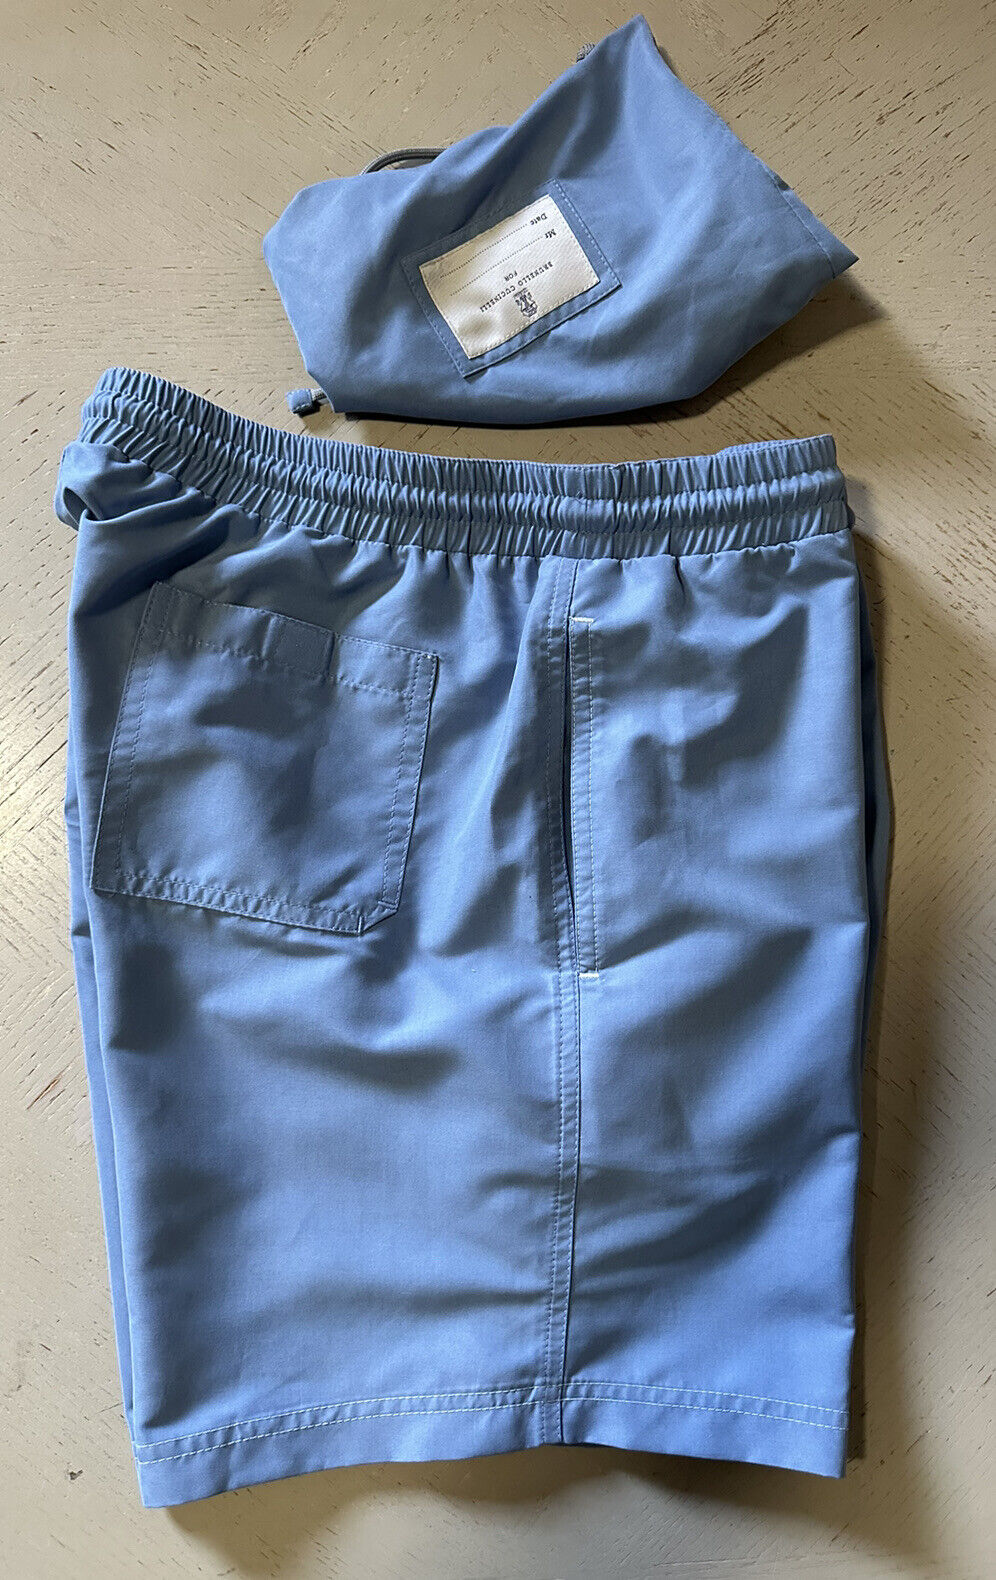 NWT $550 Brunello Cucinelli Мужские шорты для плавания на шнурке, цвет синий XXL